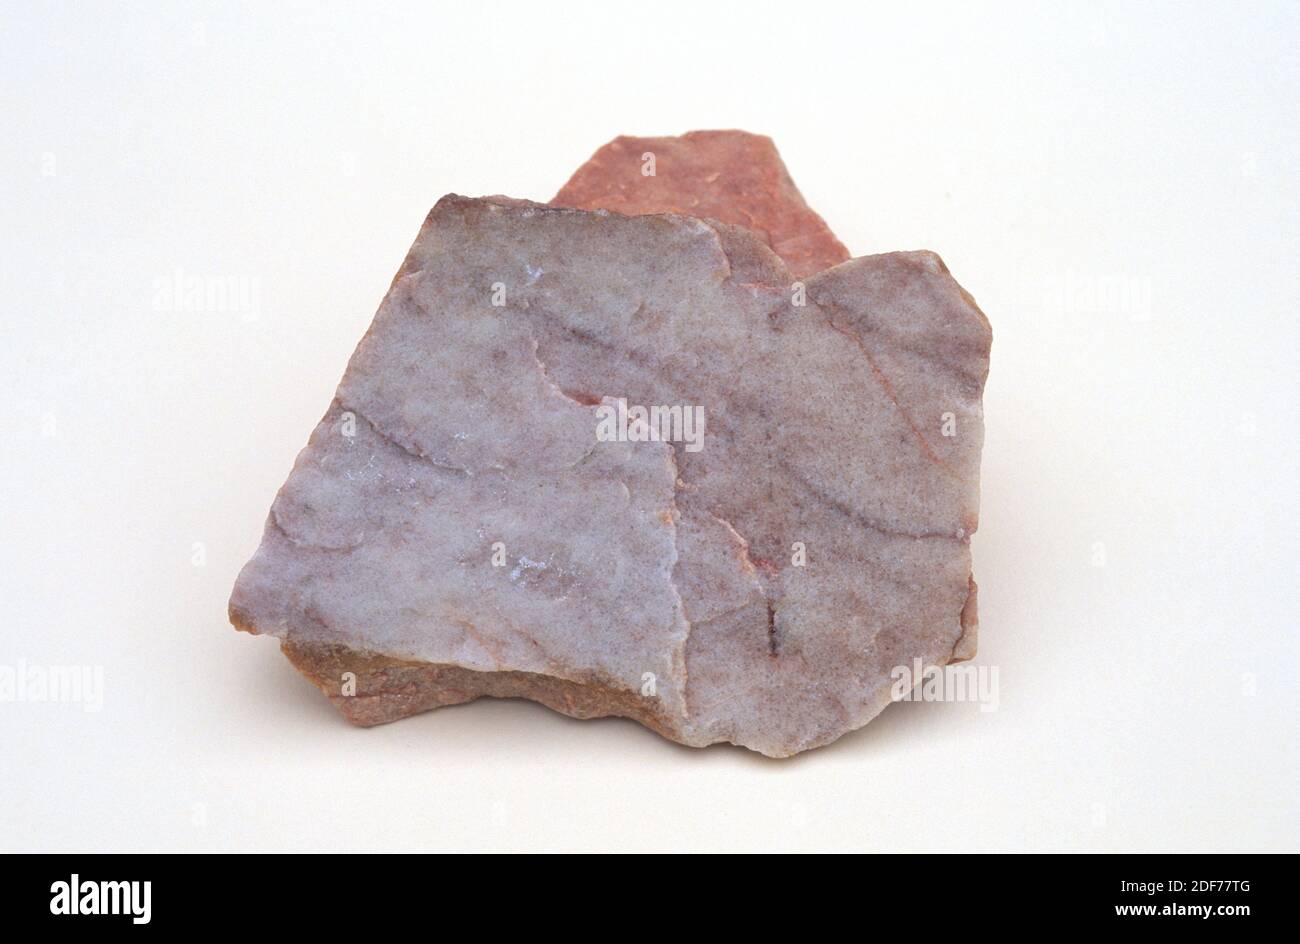 Quarzit ist ein metamorphes Gestein, das aus Quarz besteht. Probe. Stockfoto